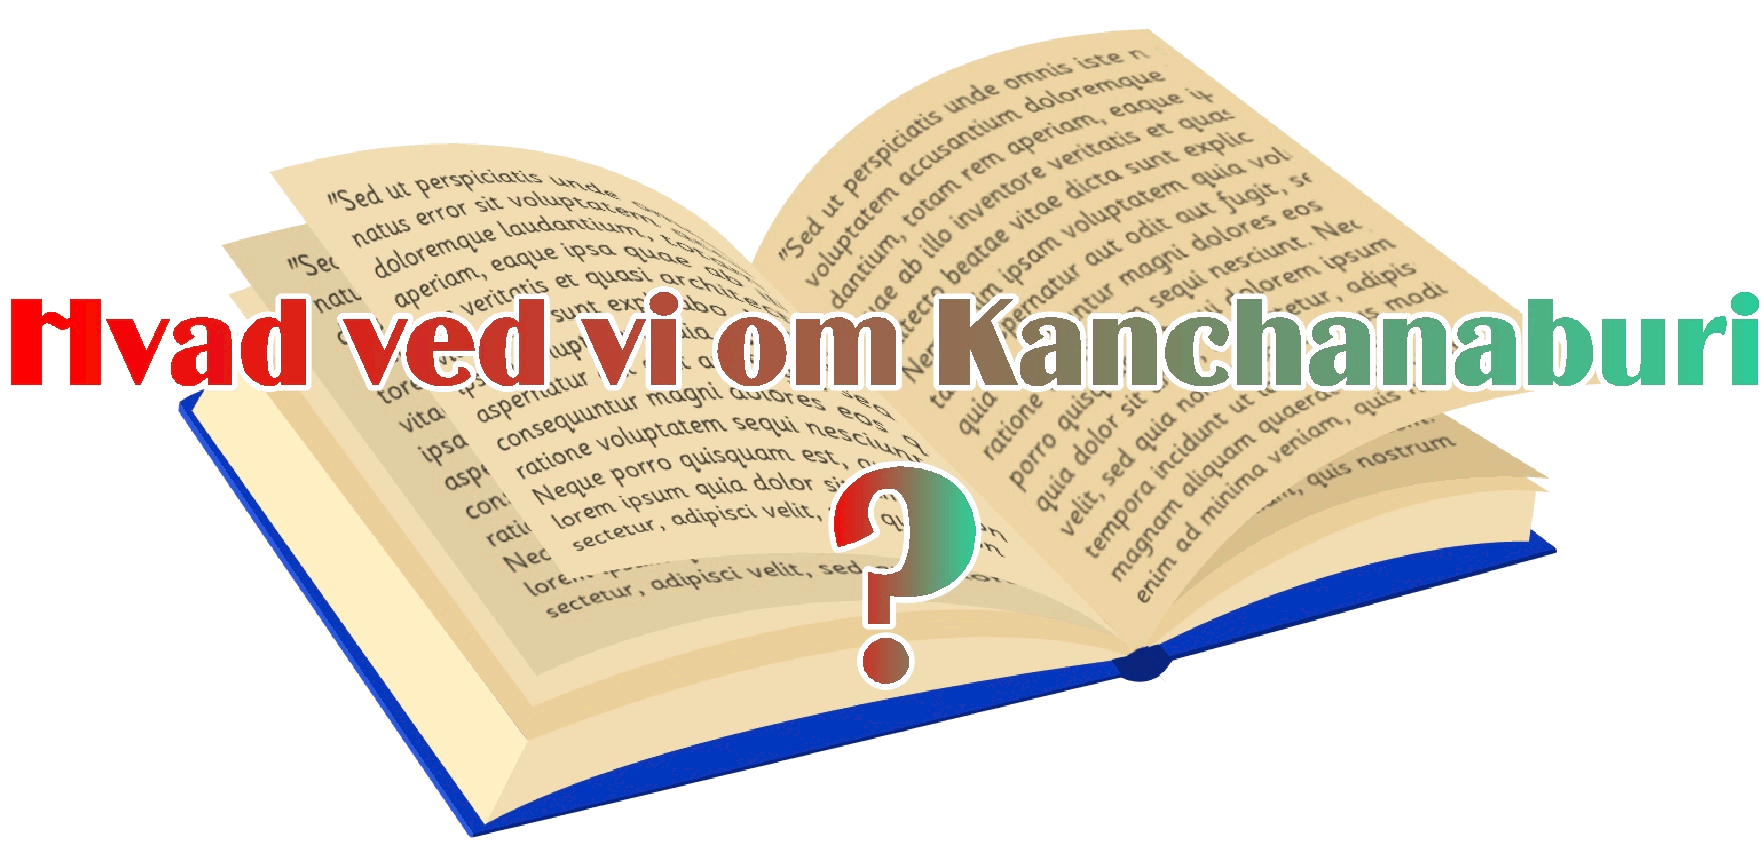 hvad ved vi om Kanchanaburi